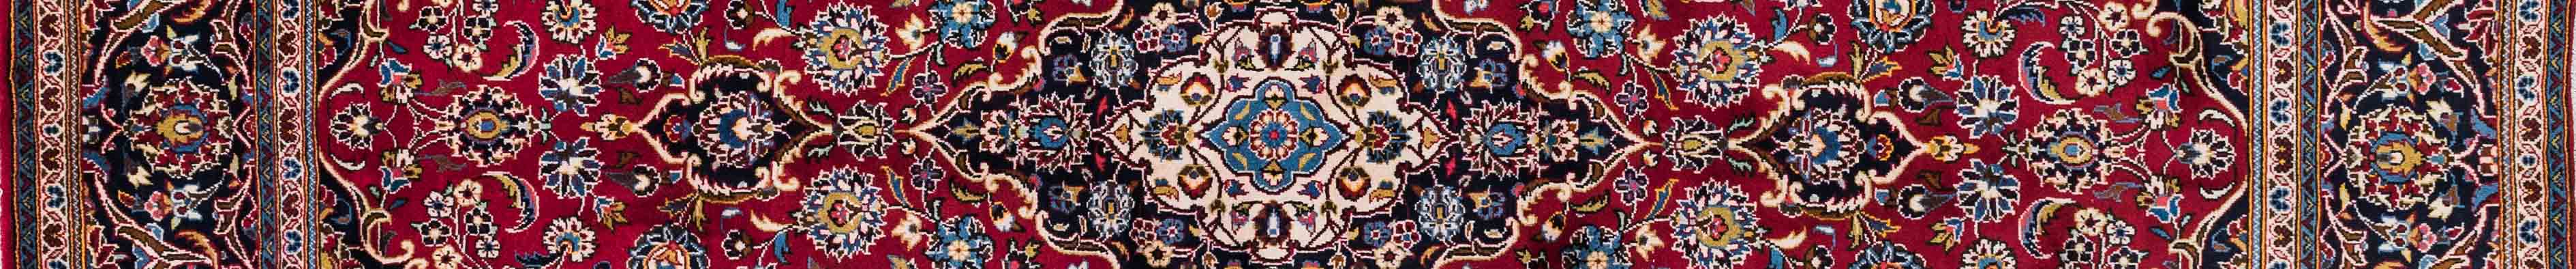 Kashan Persian Carpet Rug N1Carpet Canada Montreal Tapis Persan 1900